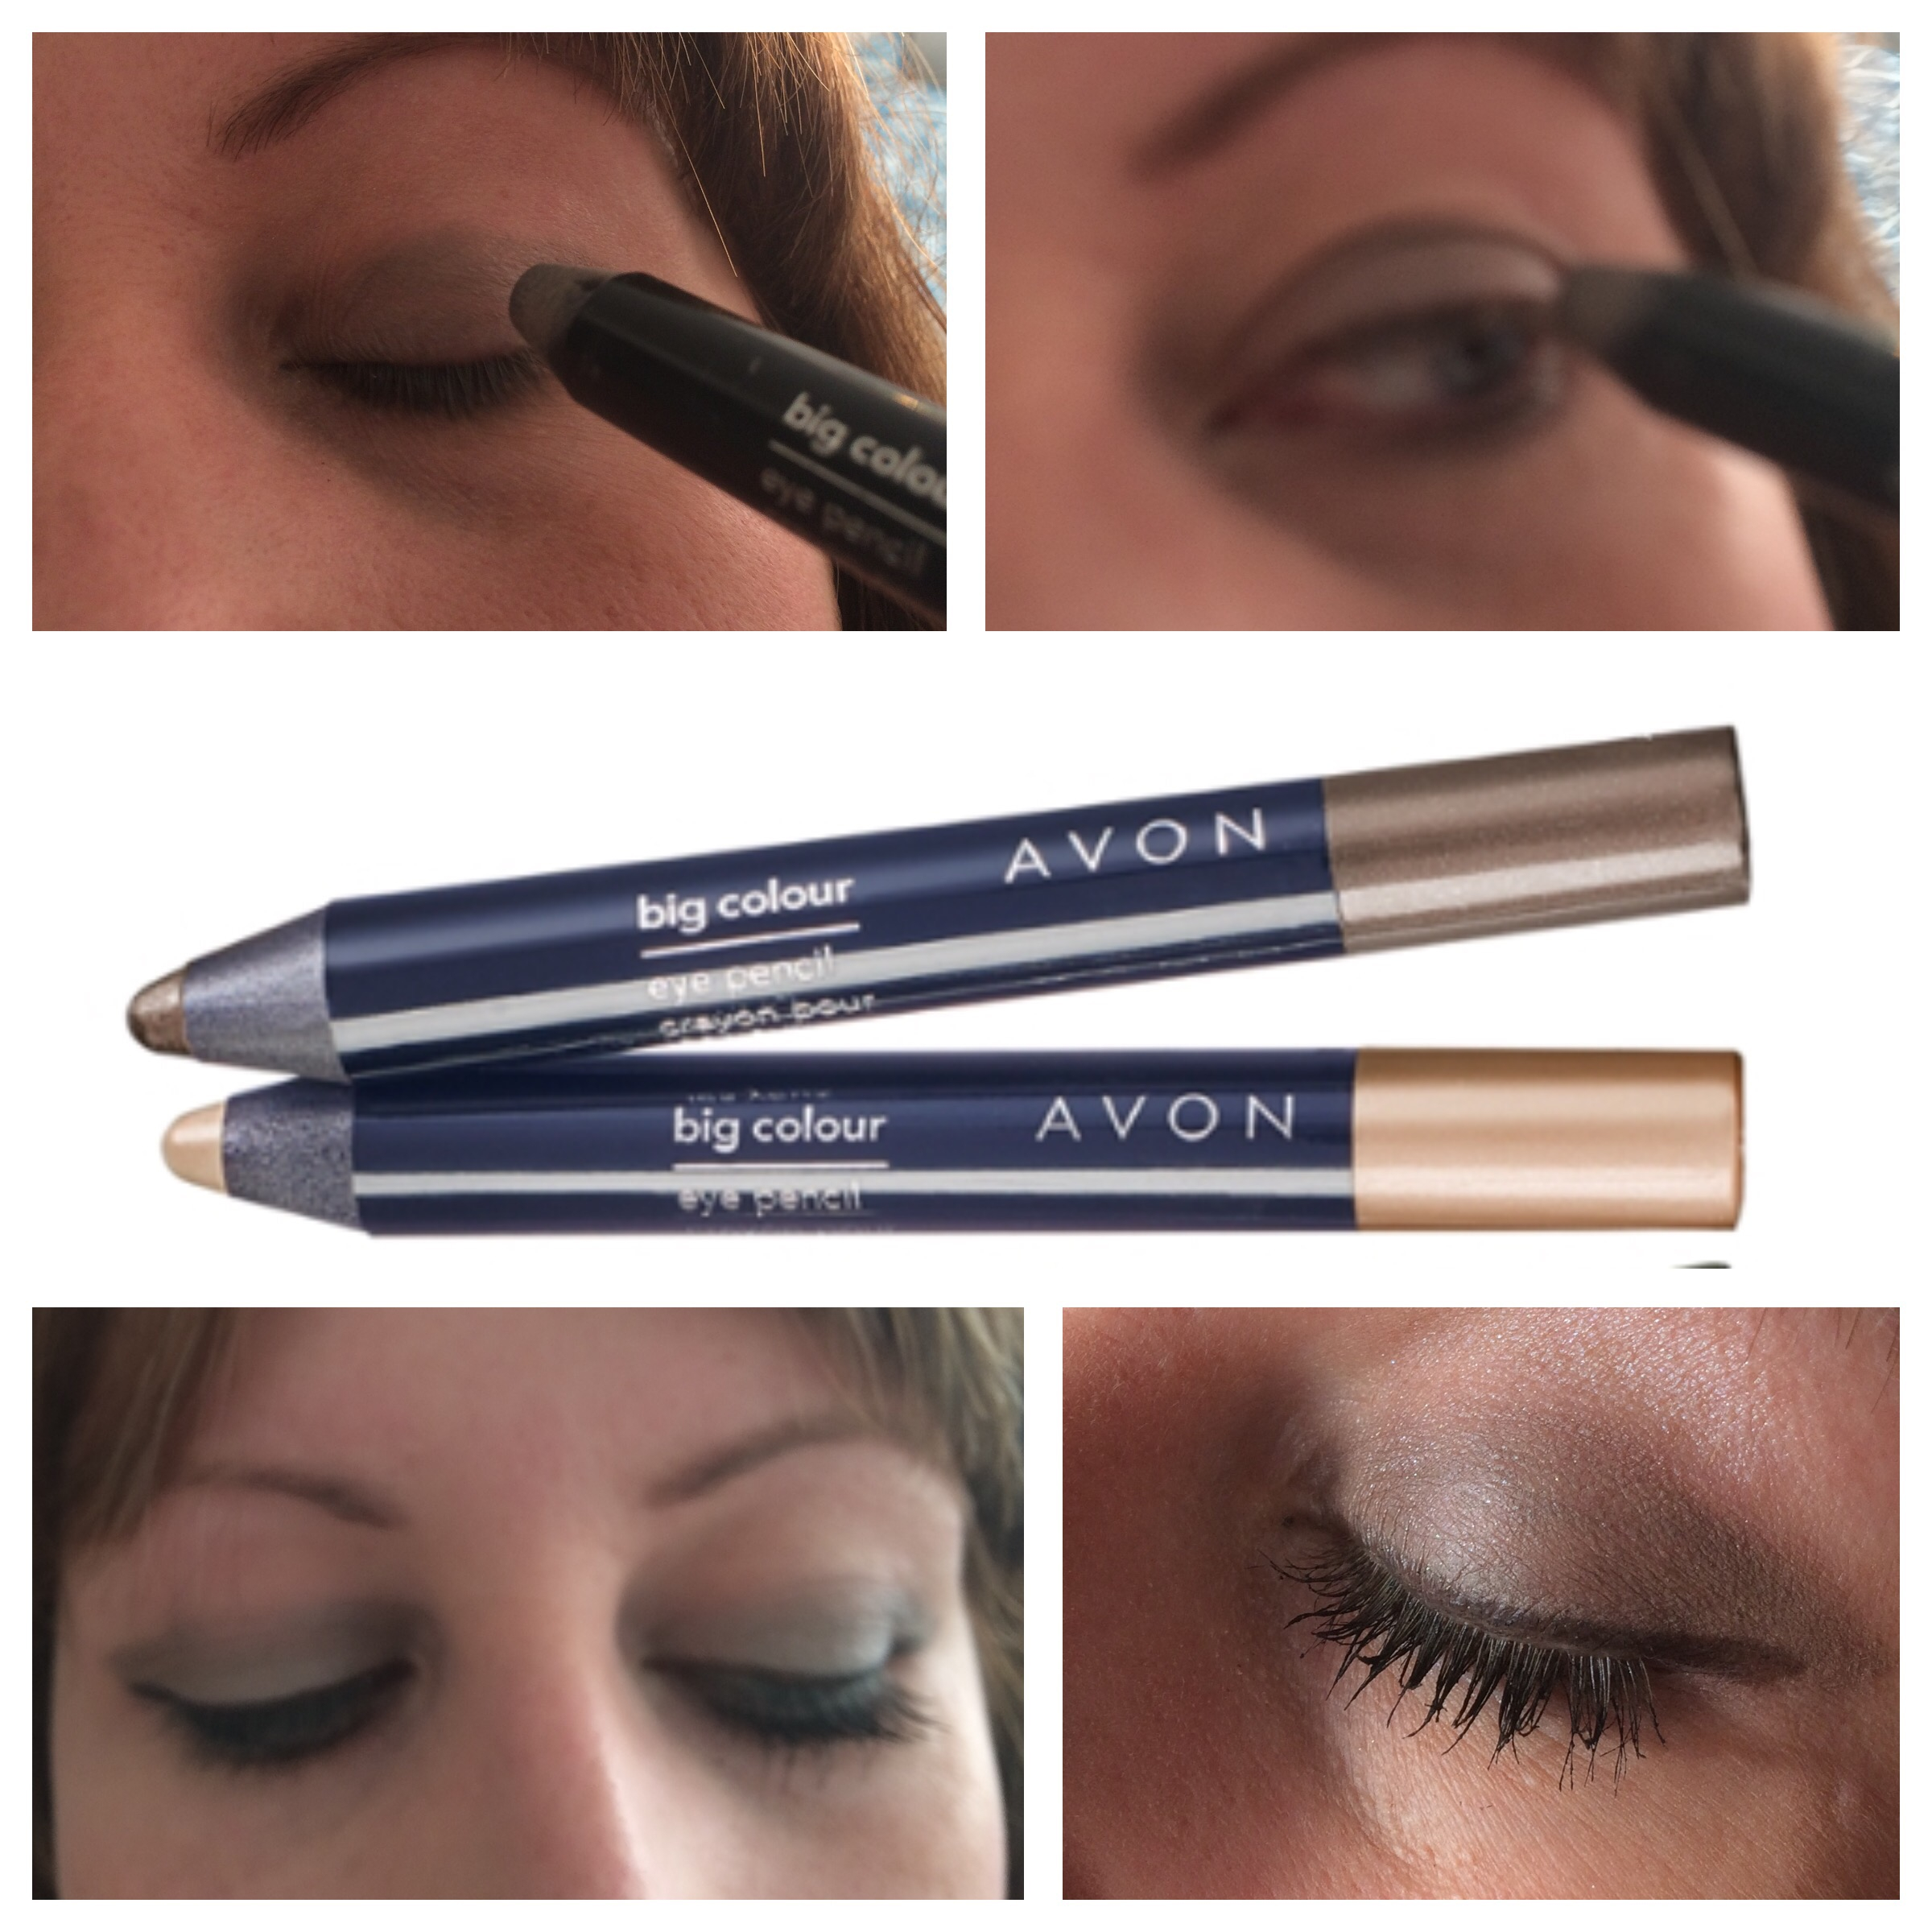 Great Eye Makeup Avon Big Colour Eye Pencil Review Thetanimal